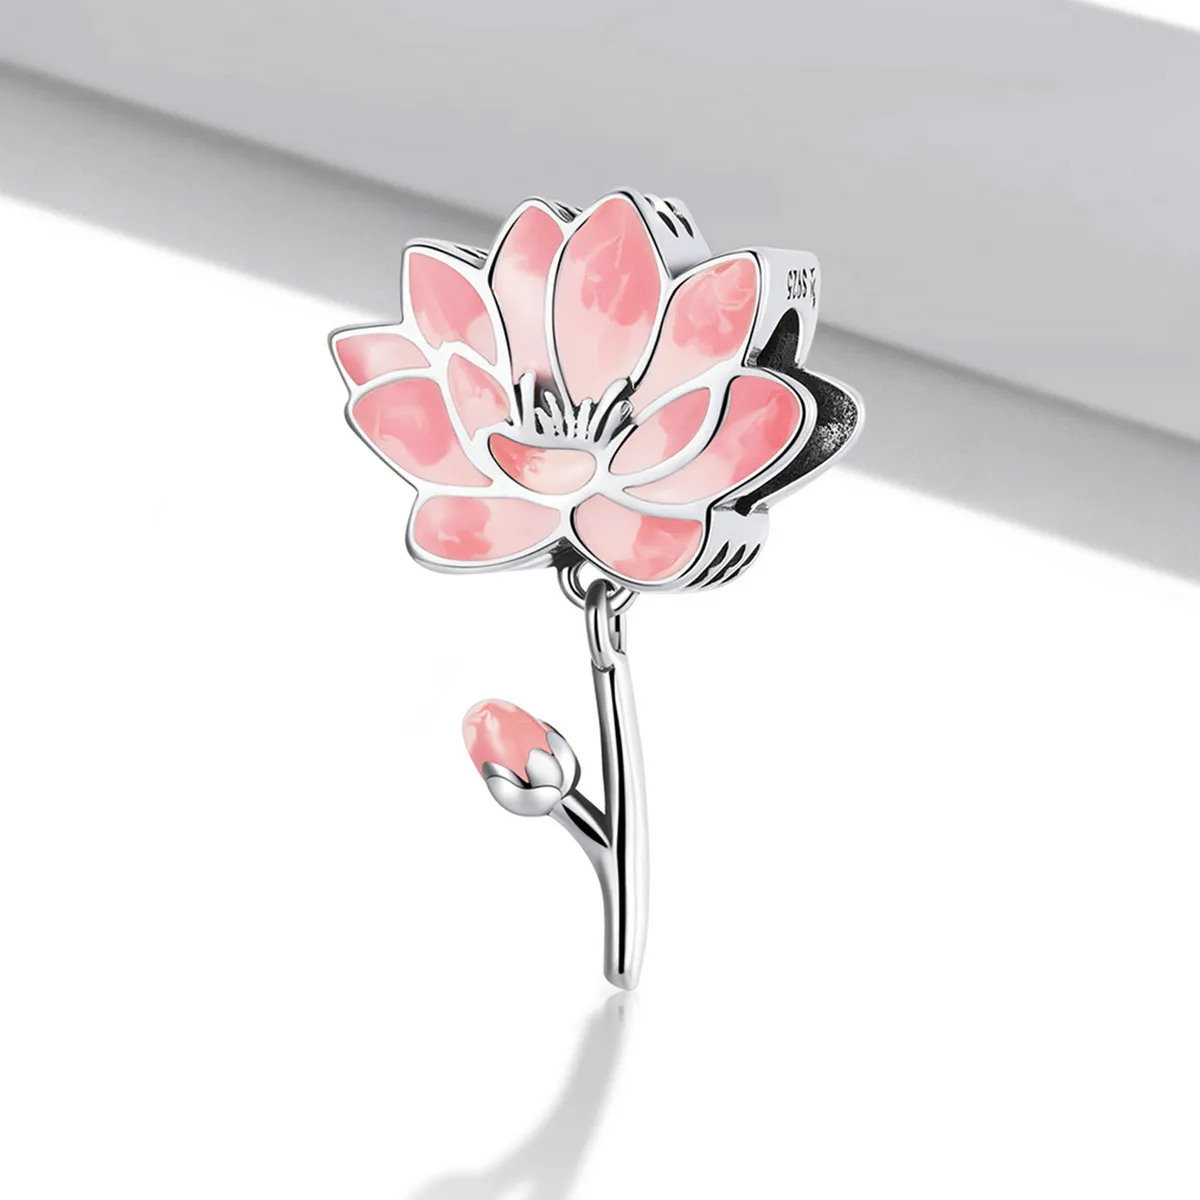 Charma în stil Pandora cu floare de lotus proaspătă - SCC2157